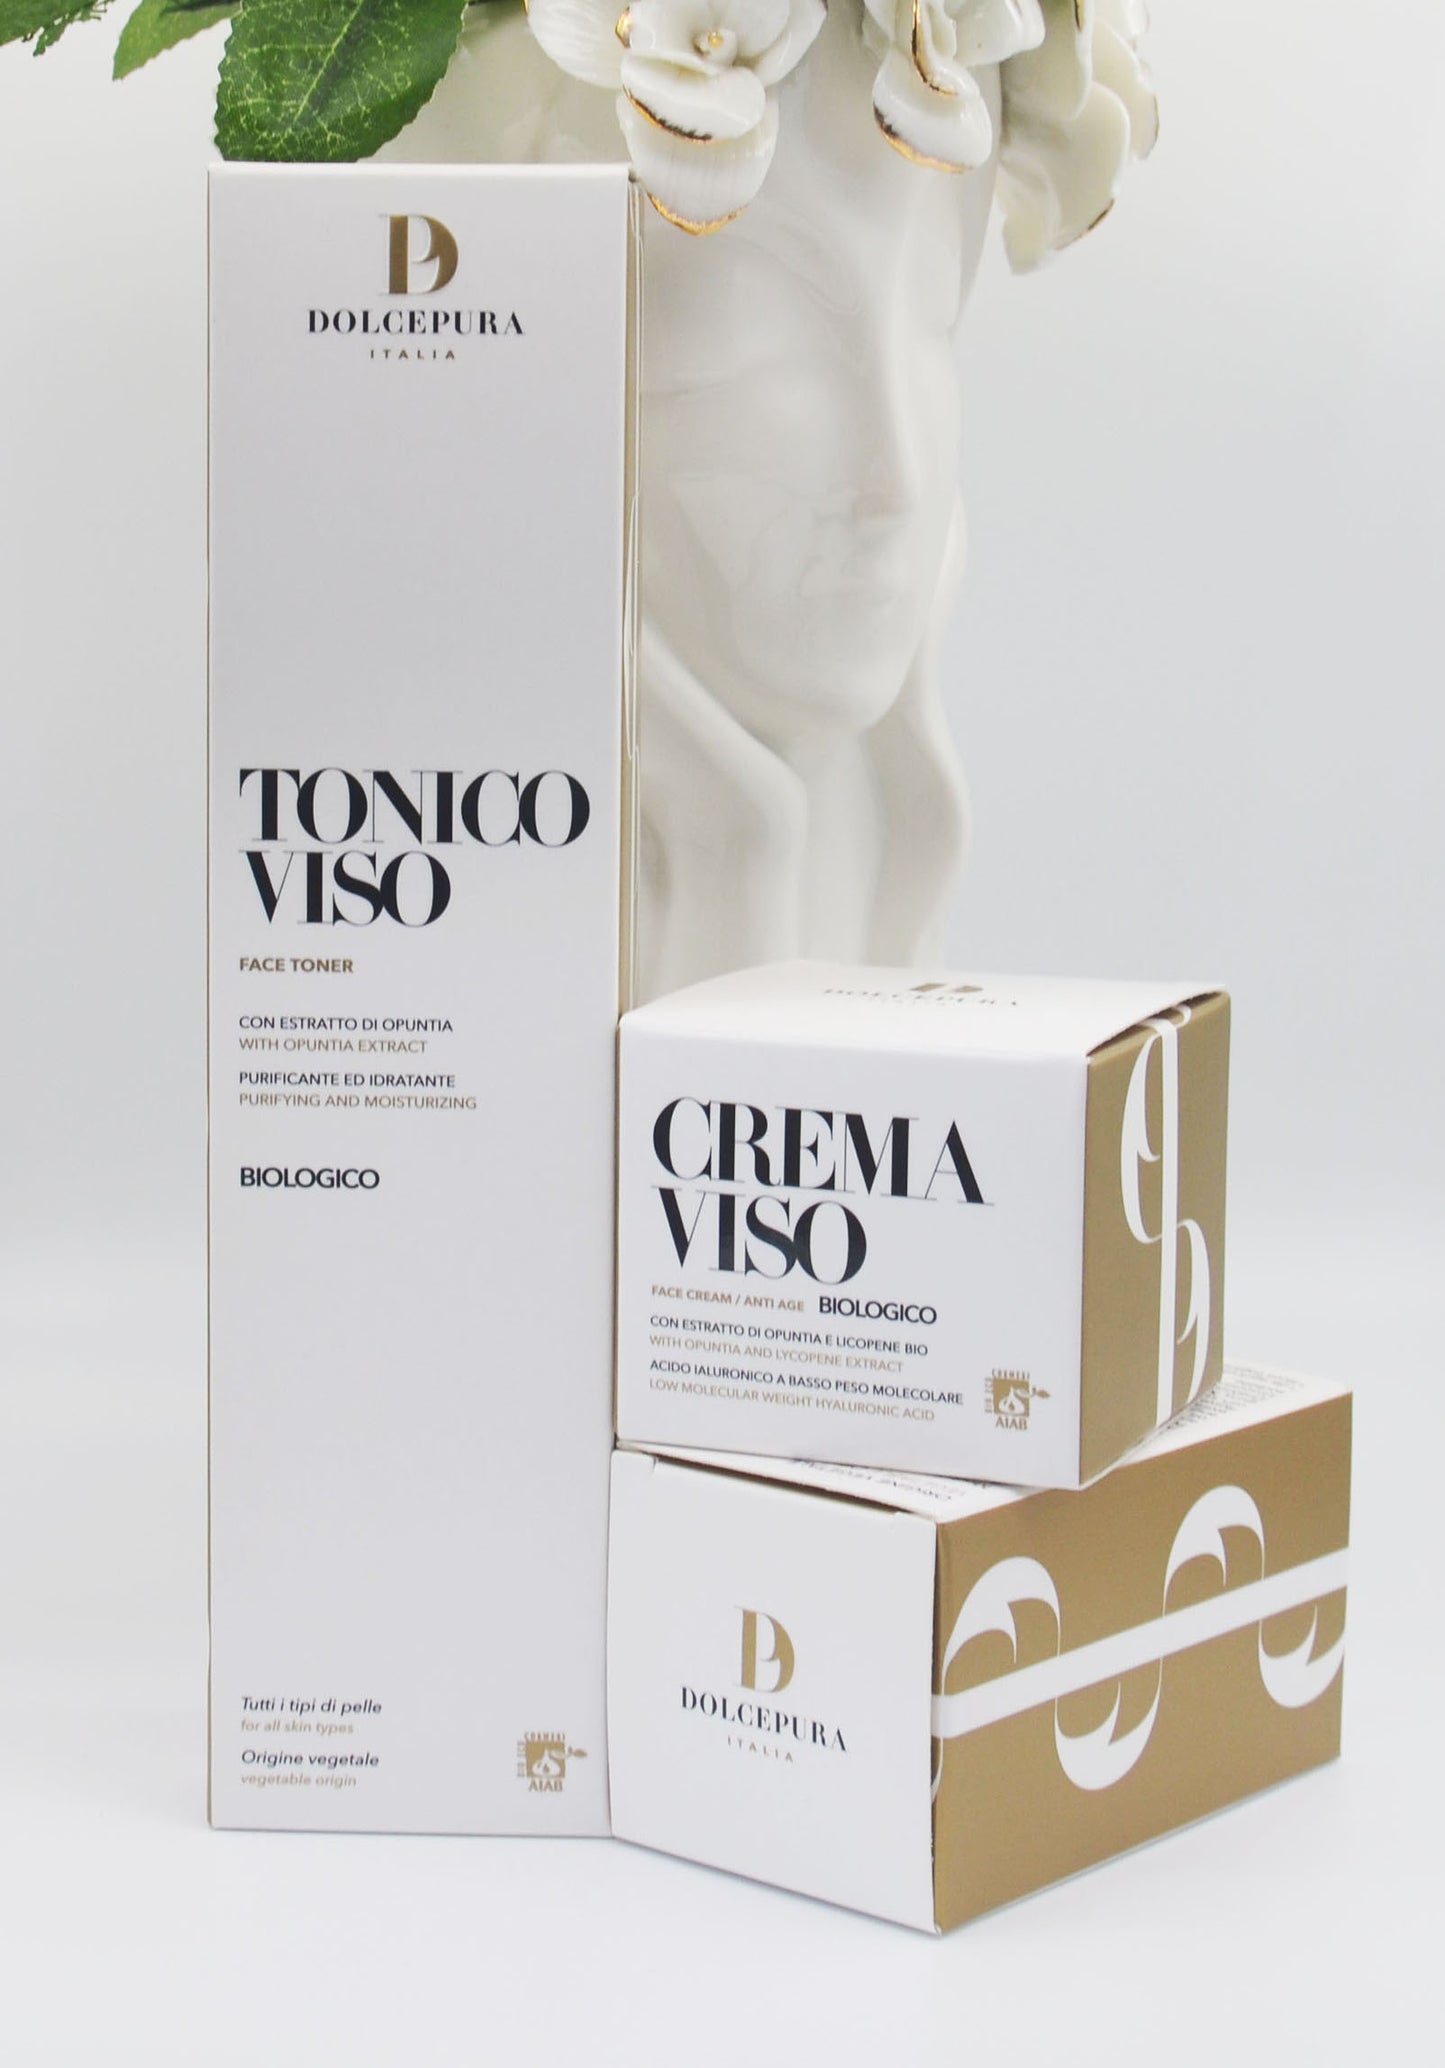 VISO set tonico e crema "GENTILE" (da ingredienti italiani organici) produzione artigianale. Certificato AIAB ecobio